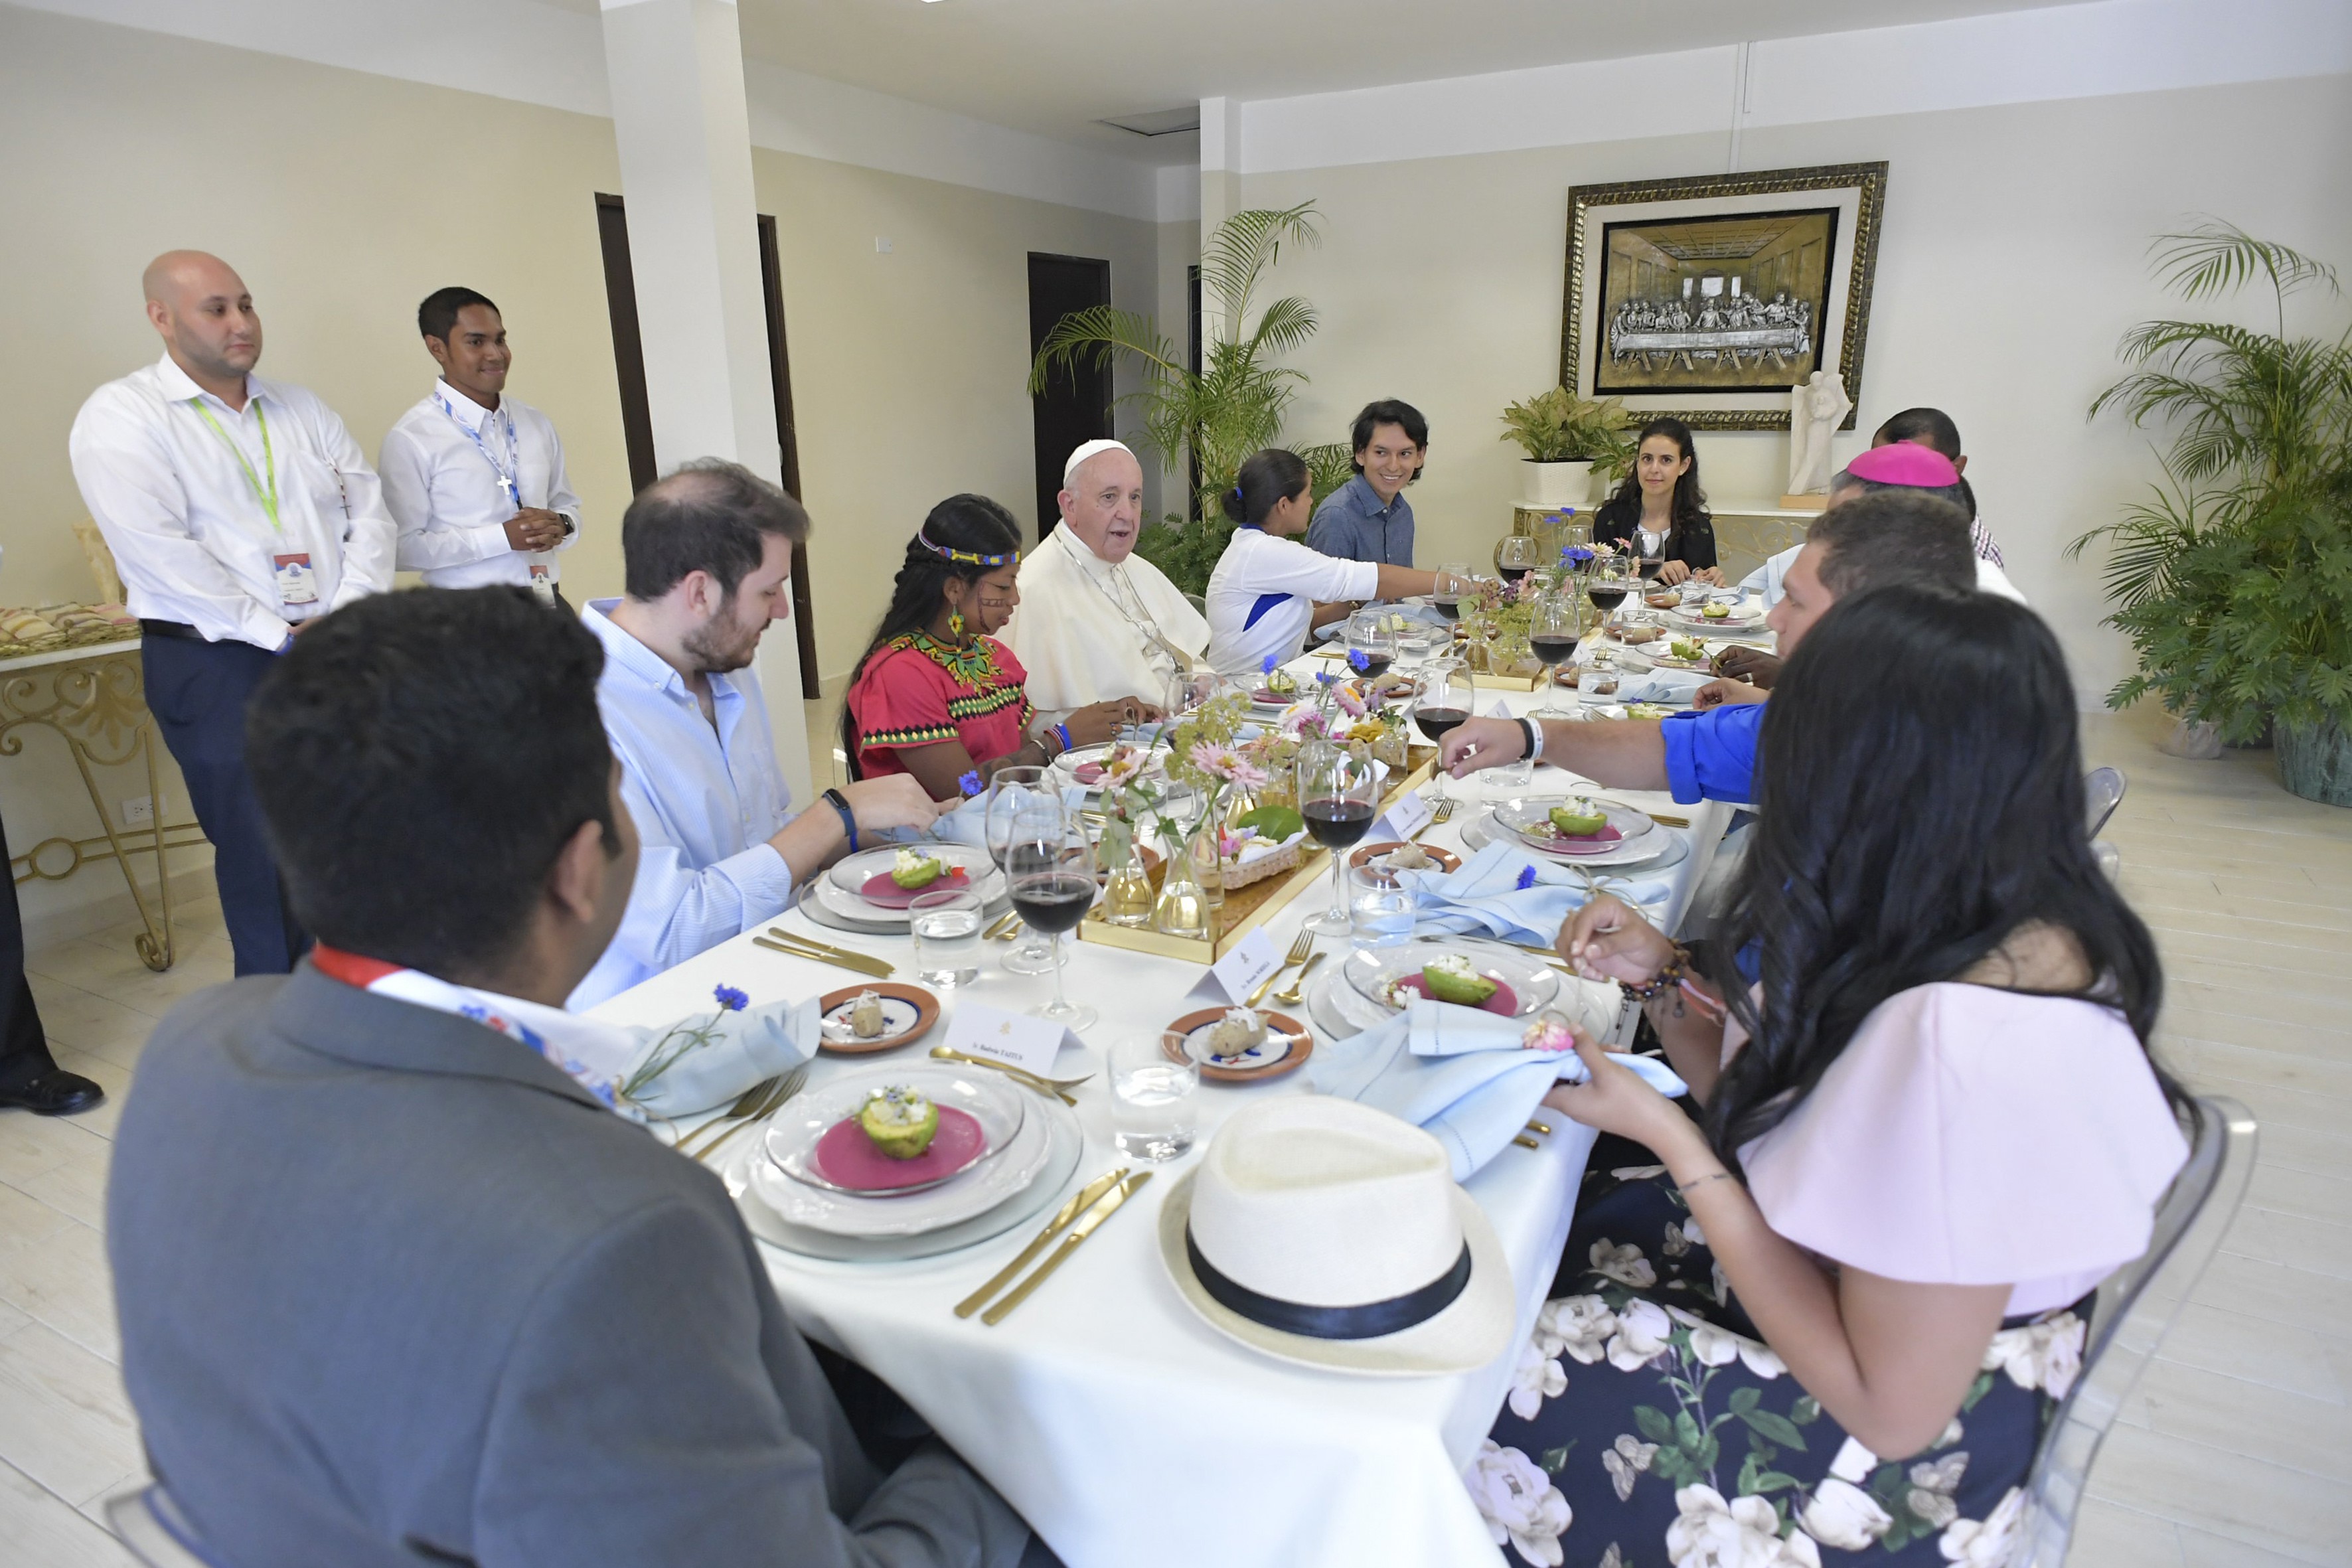 Panama, déjeuner avec des jeunes du monde © Vatican Media